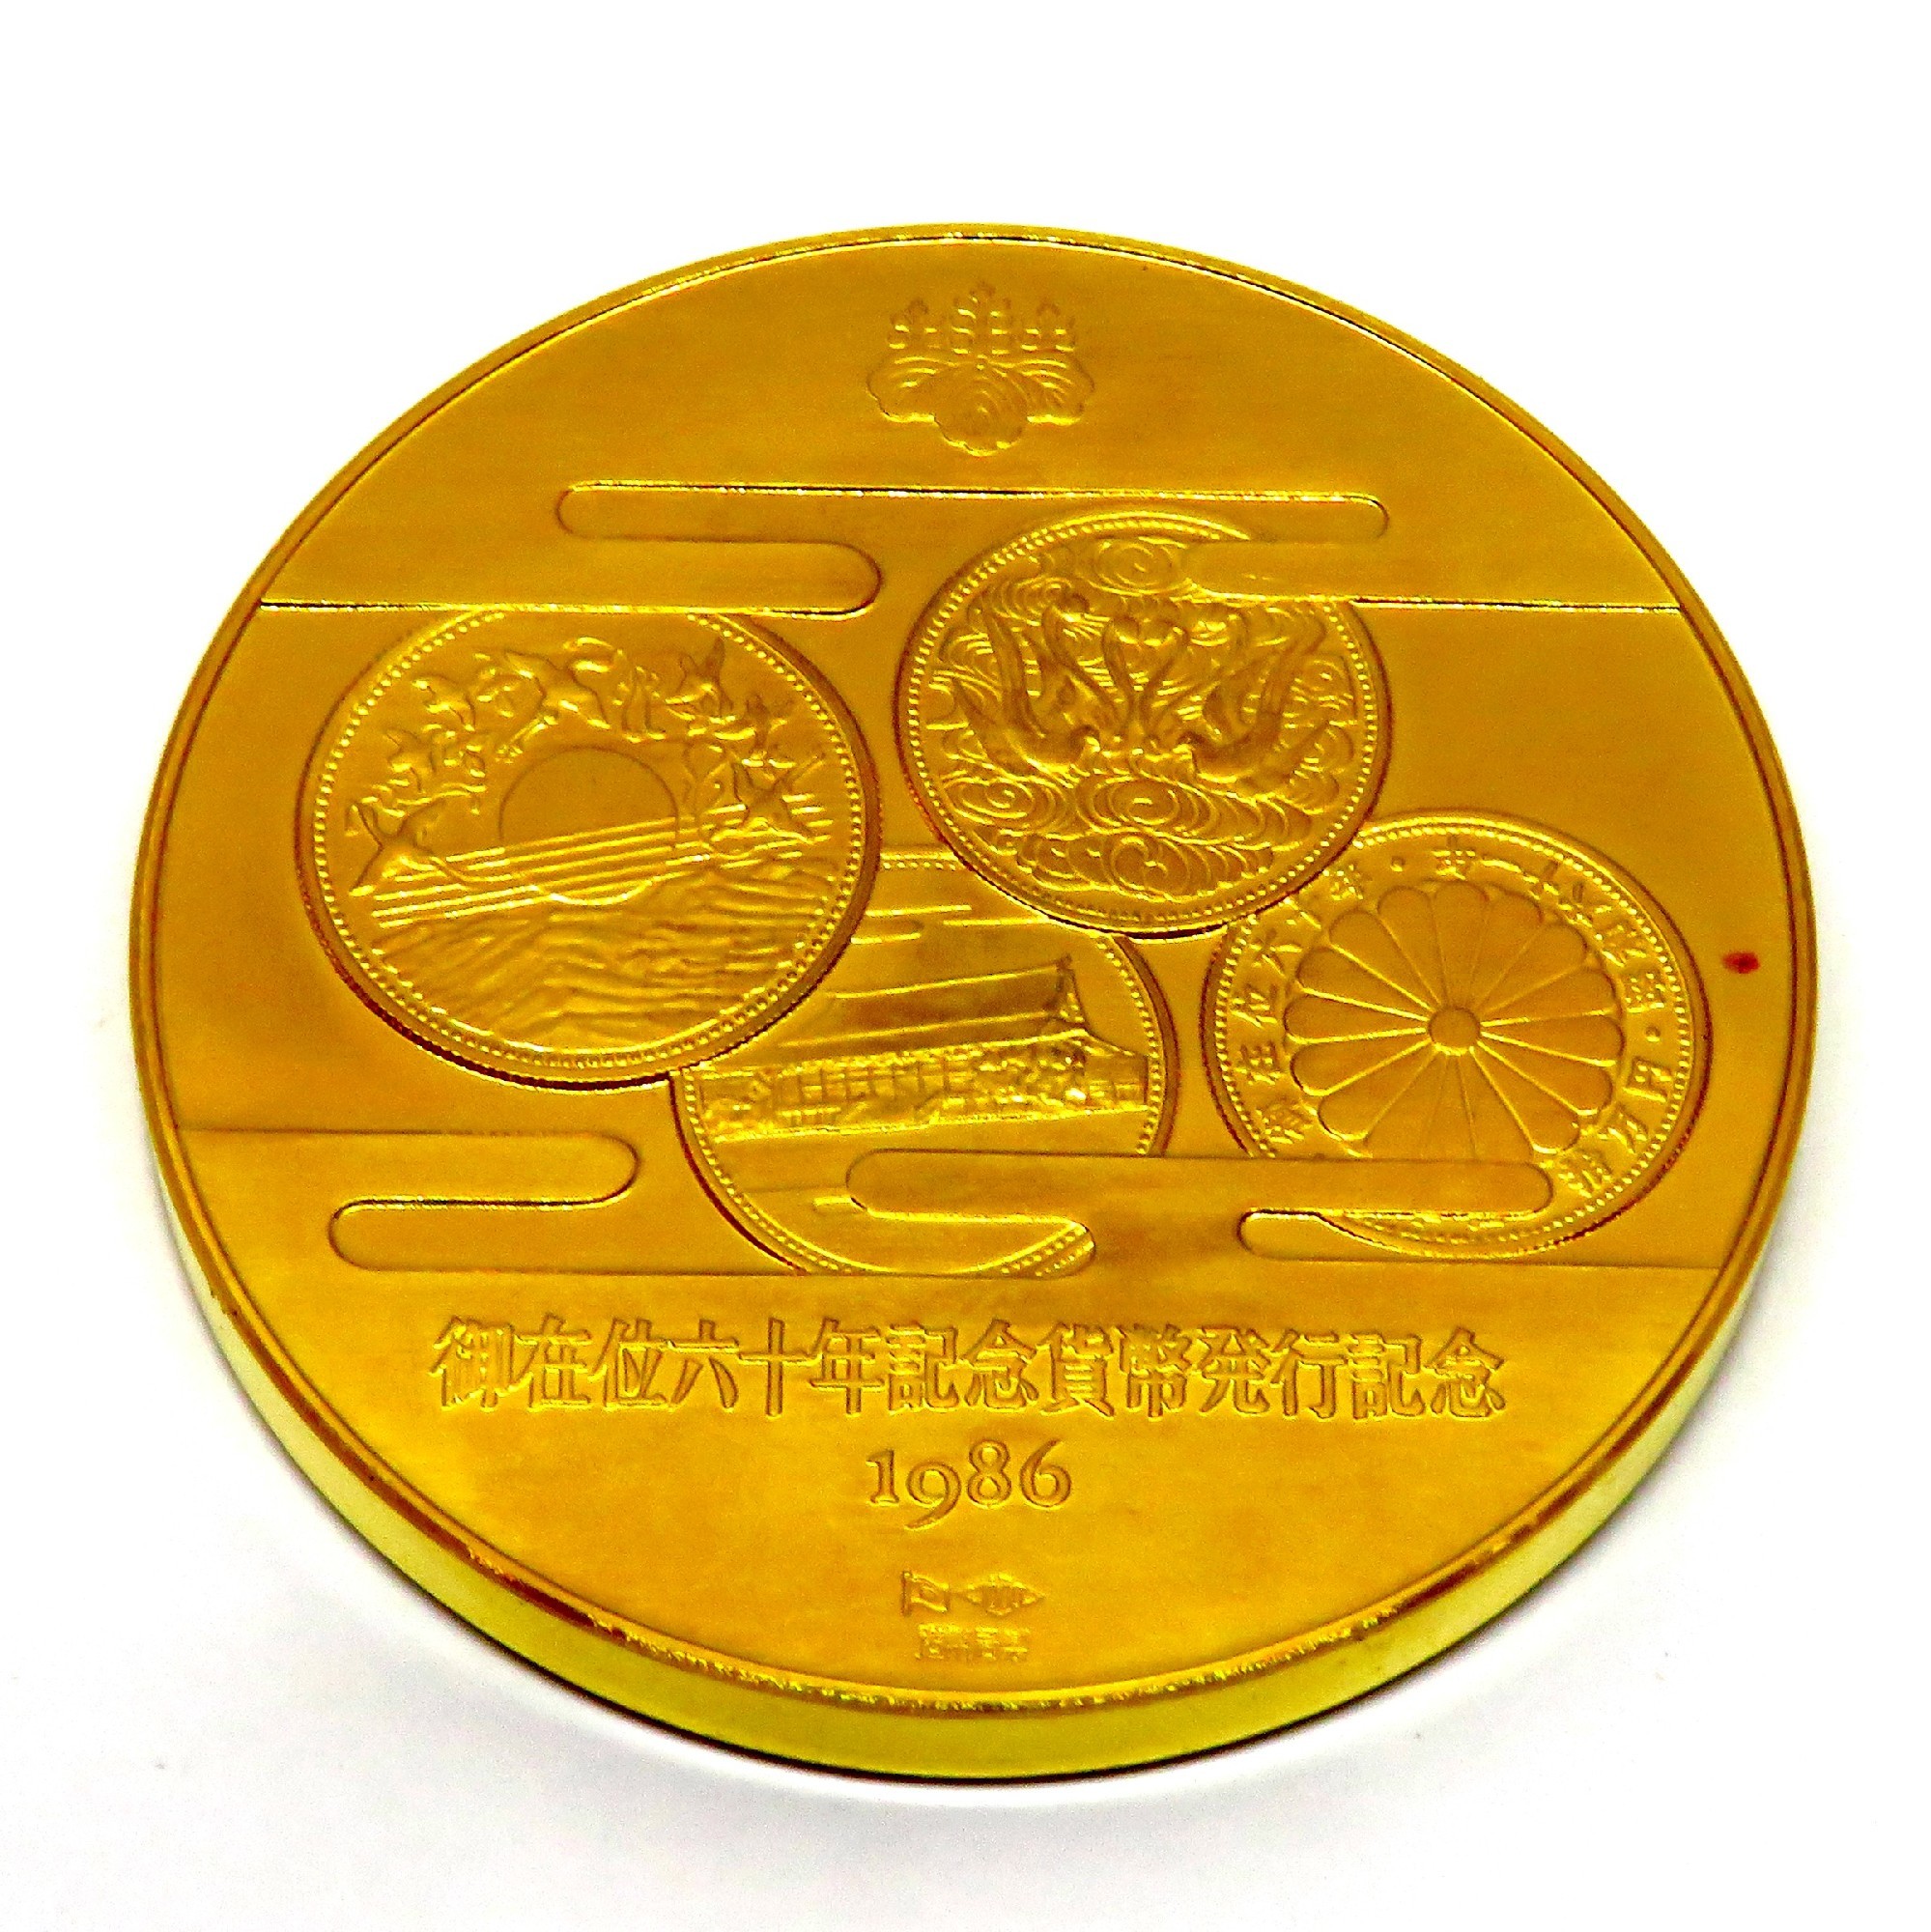 天皇陛下御在位６０年記念メダル - 貨幣